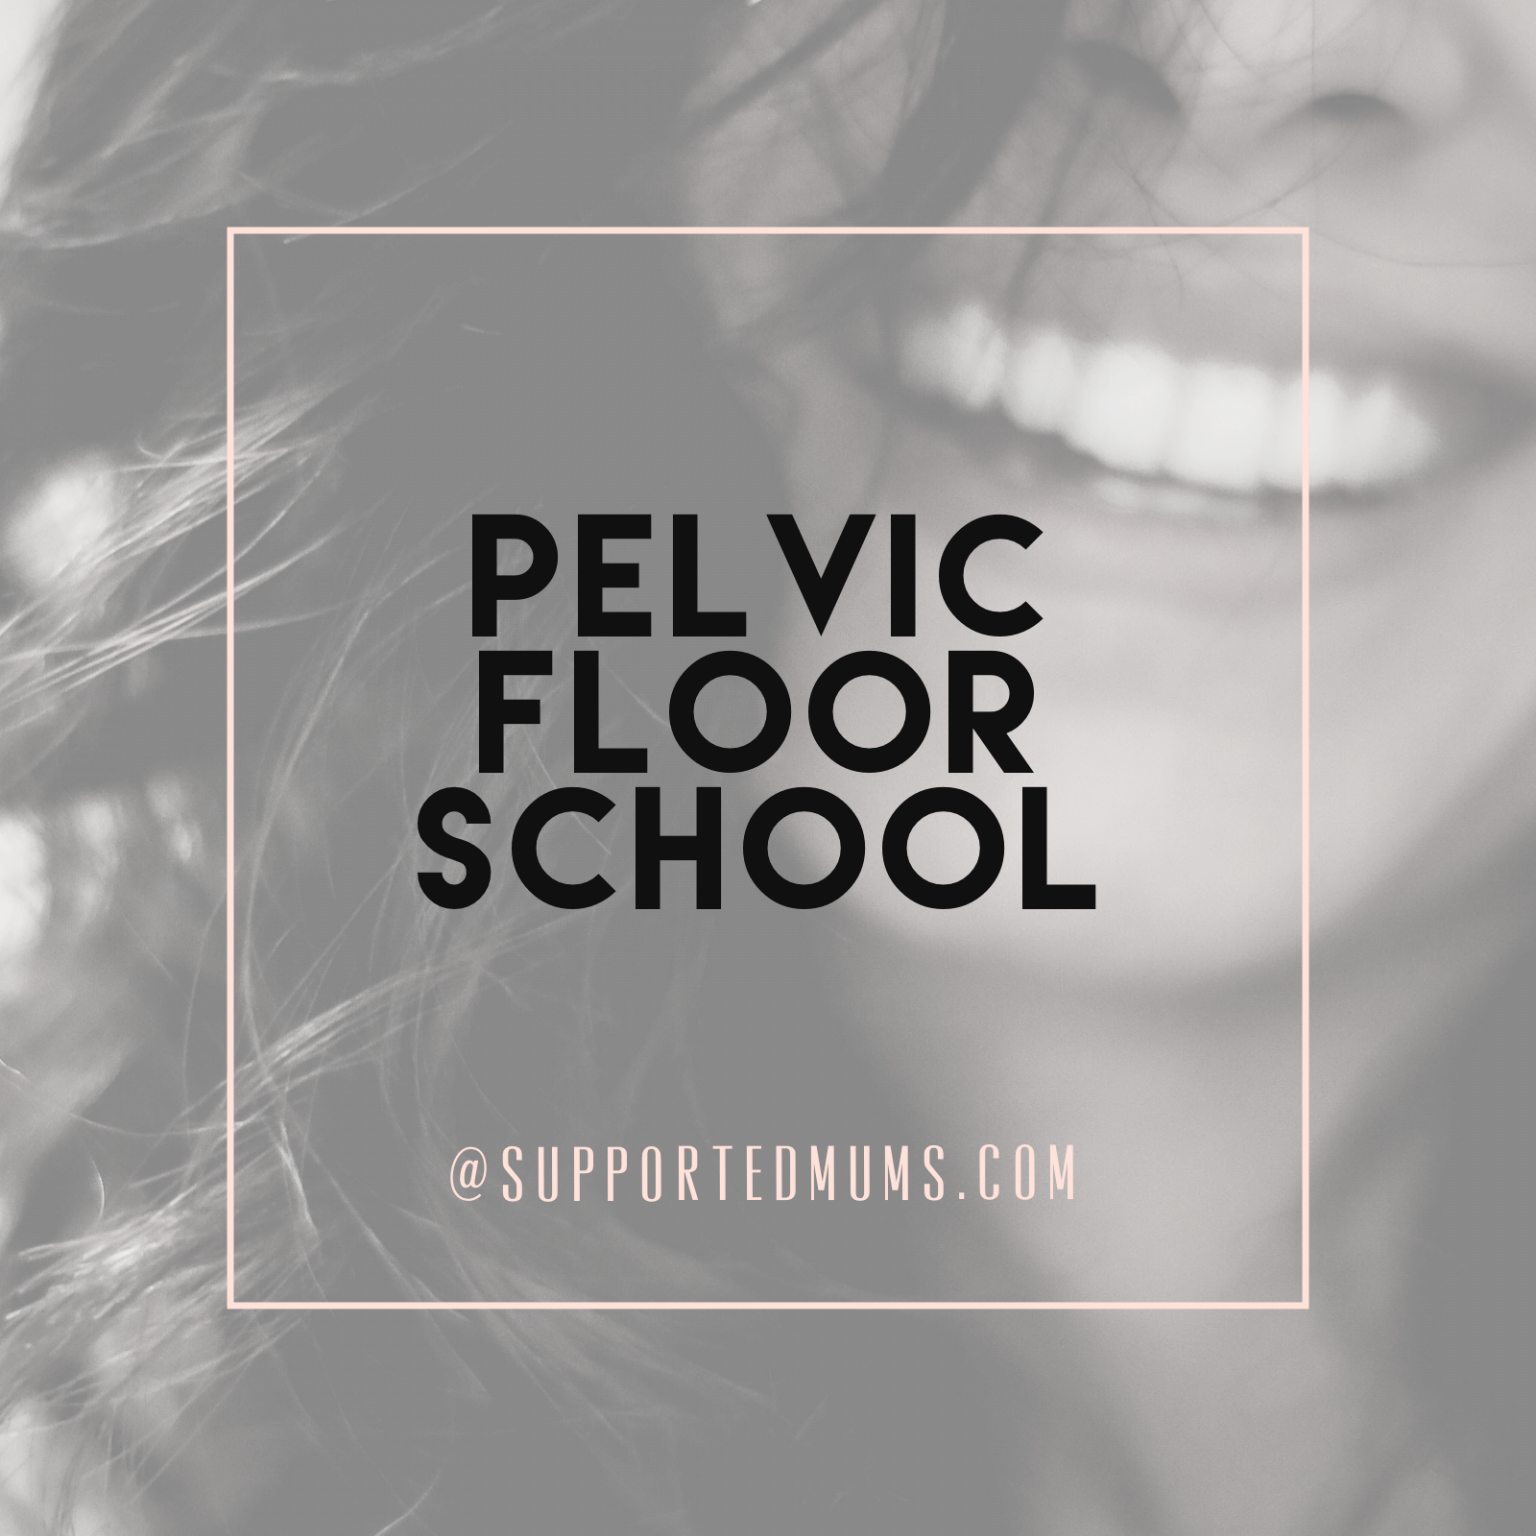 Pelvic floor school videos